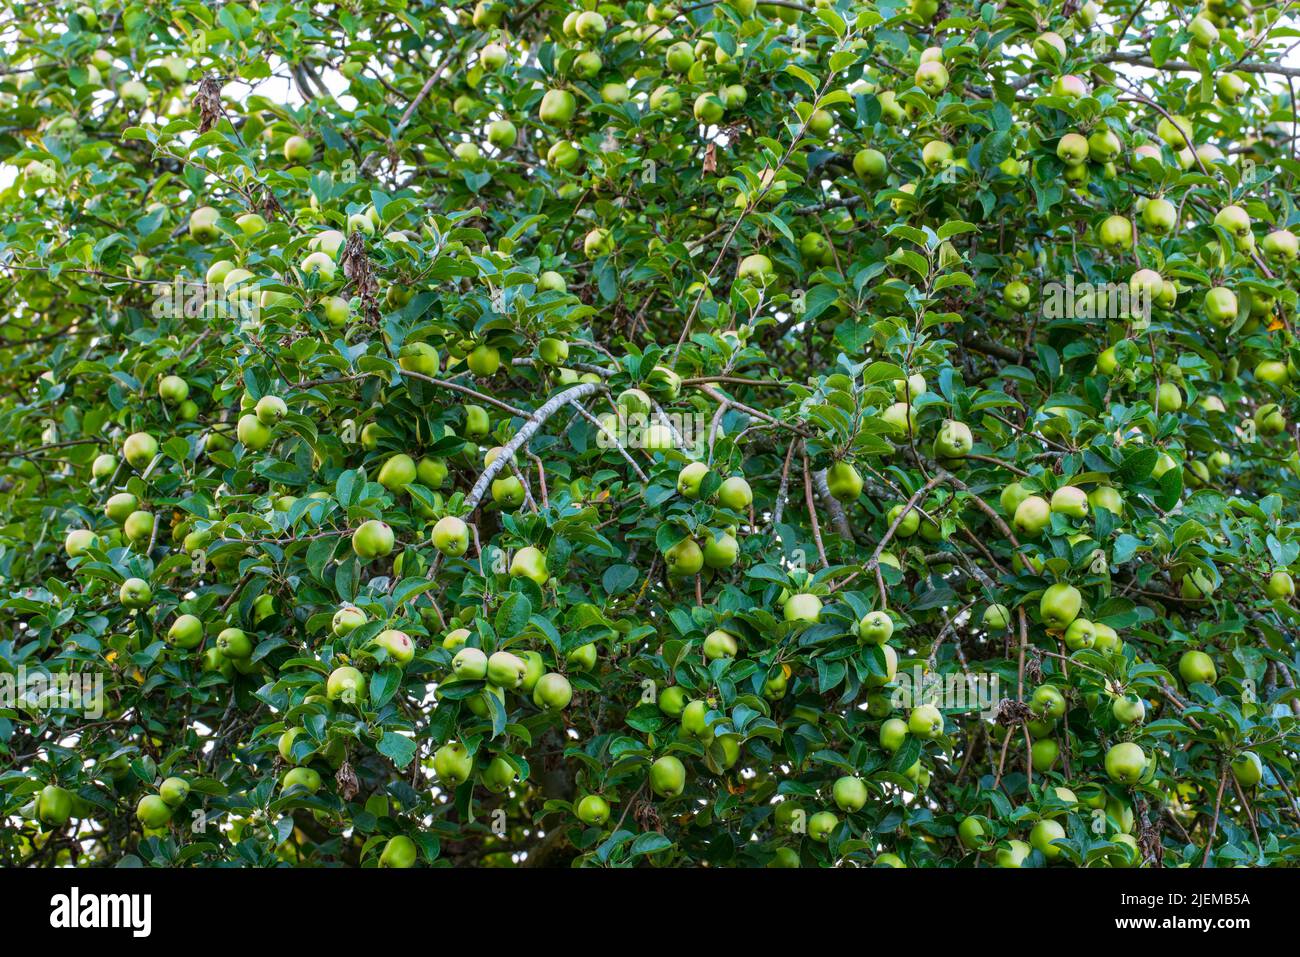 Raccolta naturale e deliziosa di mele verdi nel giardino delle mele. I punti metallici verdi sono in un processo di maturazione tra i rami e le foglie verdi di Foto Stock